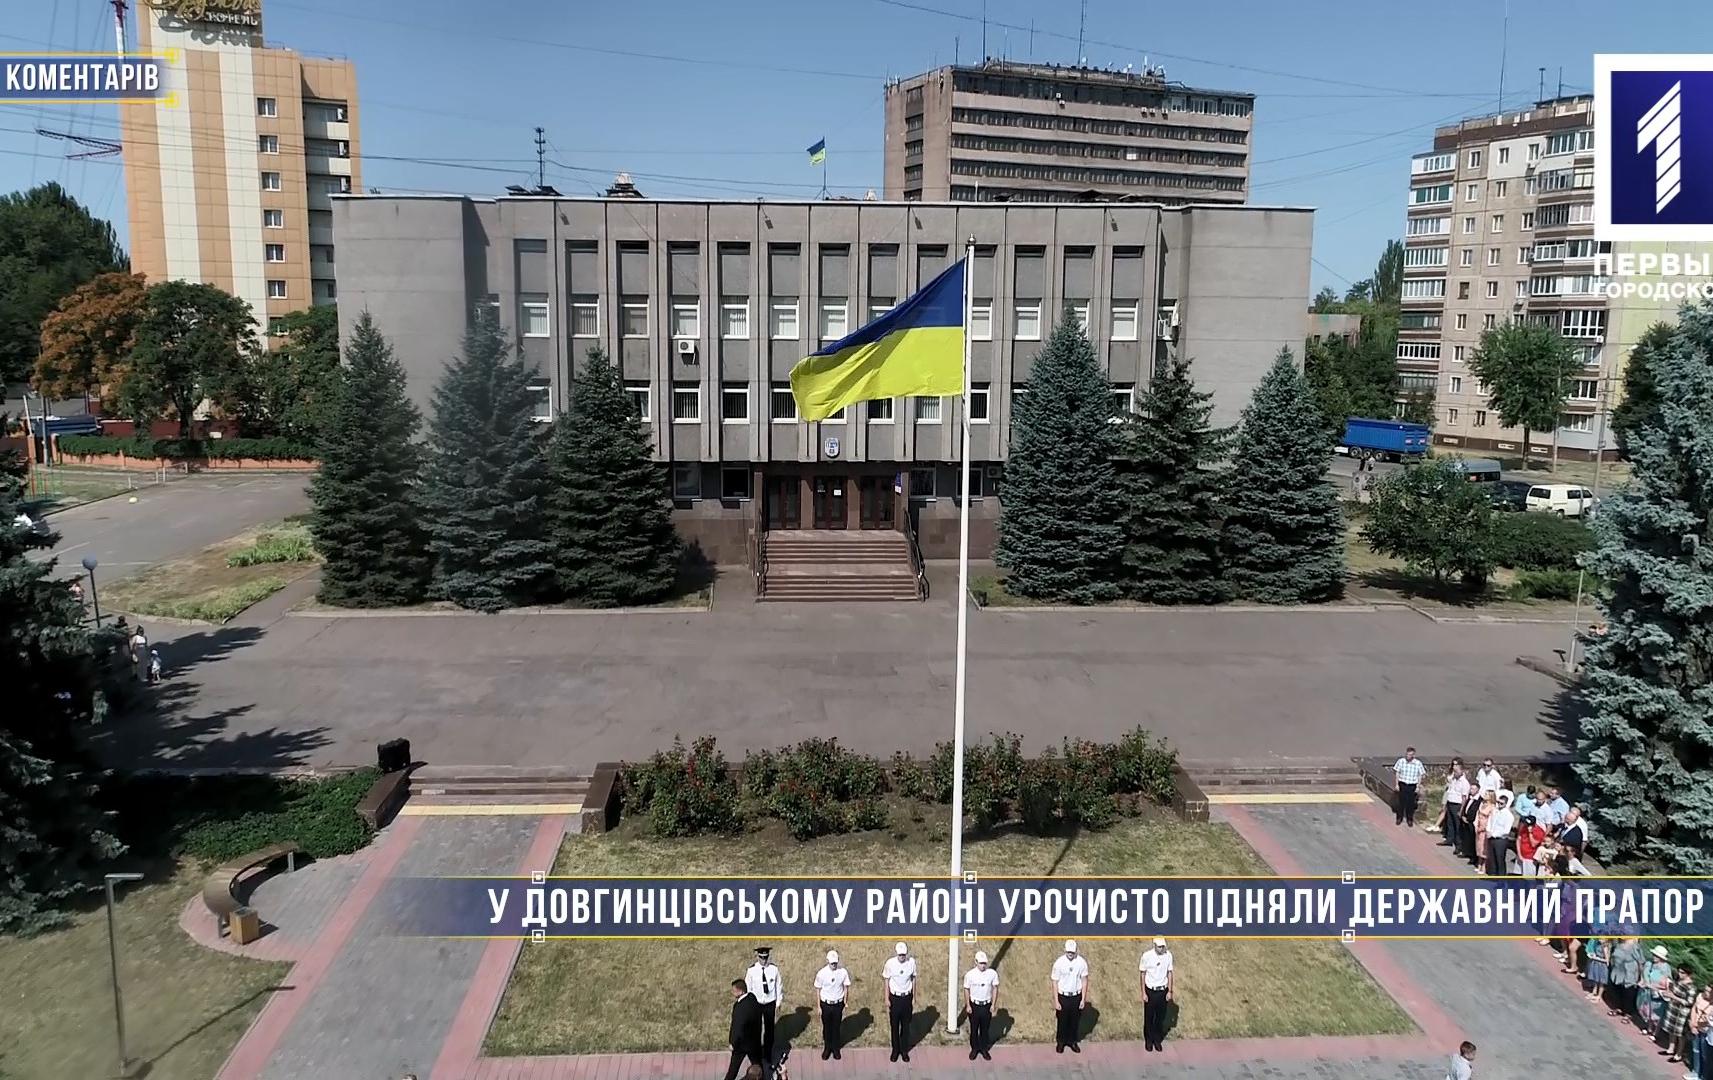 Без коментарів: у Довгинцівському районі урочисто підняли державний прапор